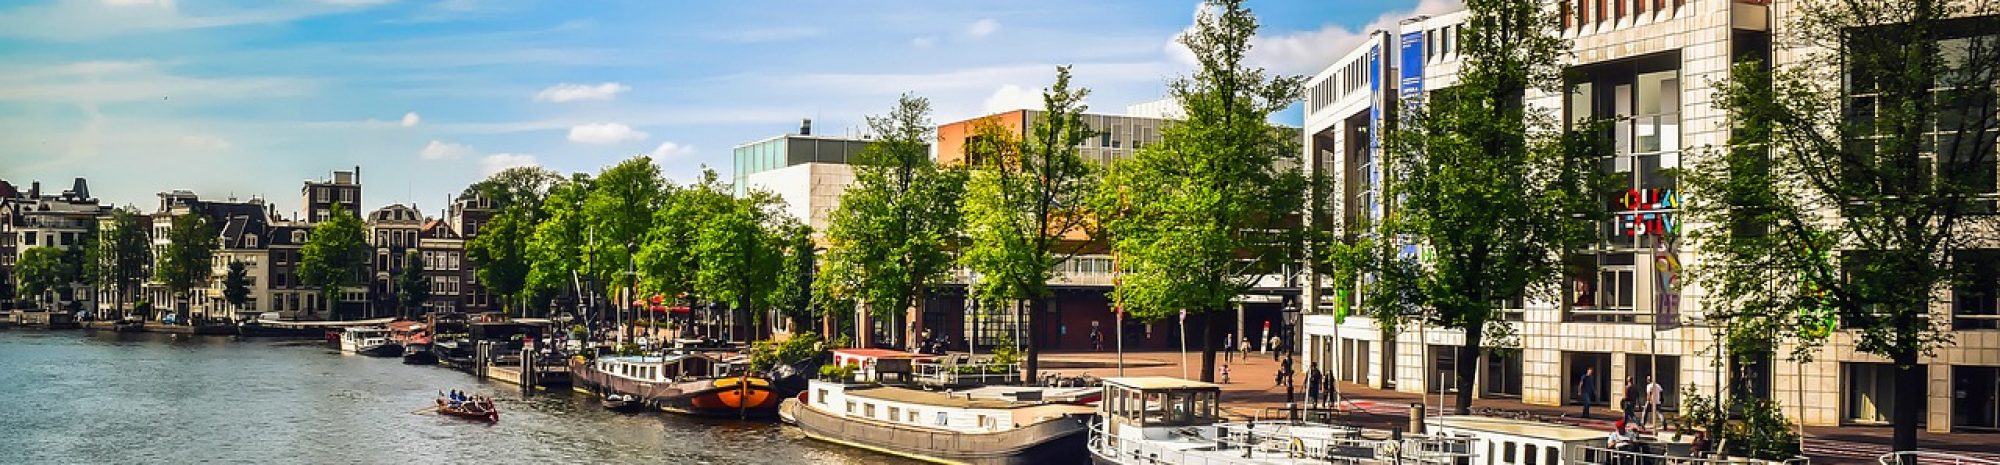 Découvrez la vie locale en visitant des maisons d’Amsterdam transformées en musées